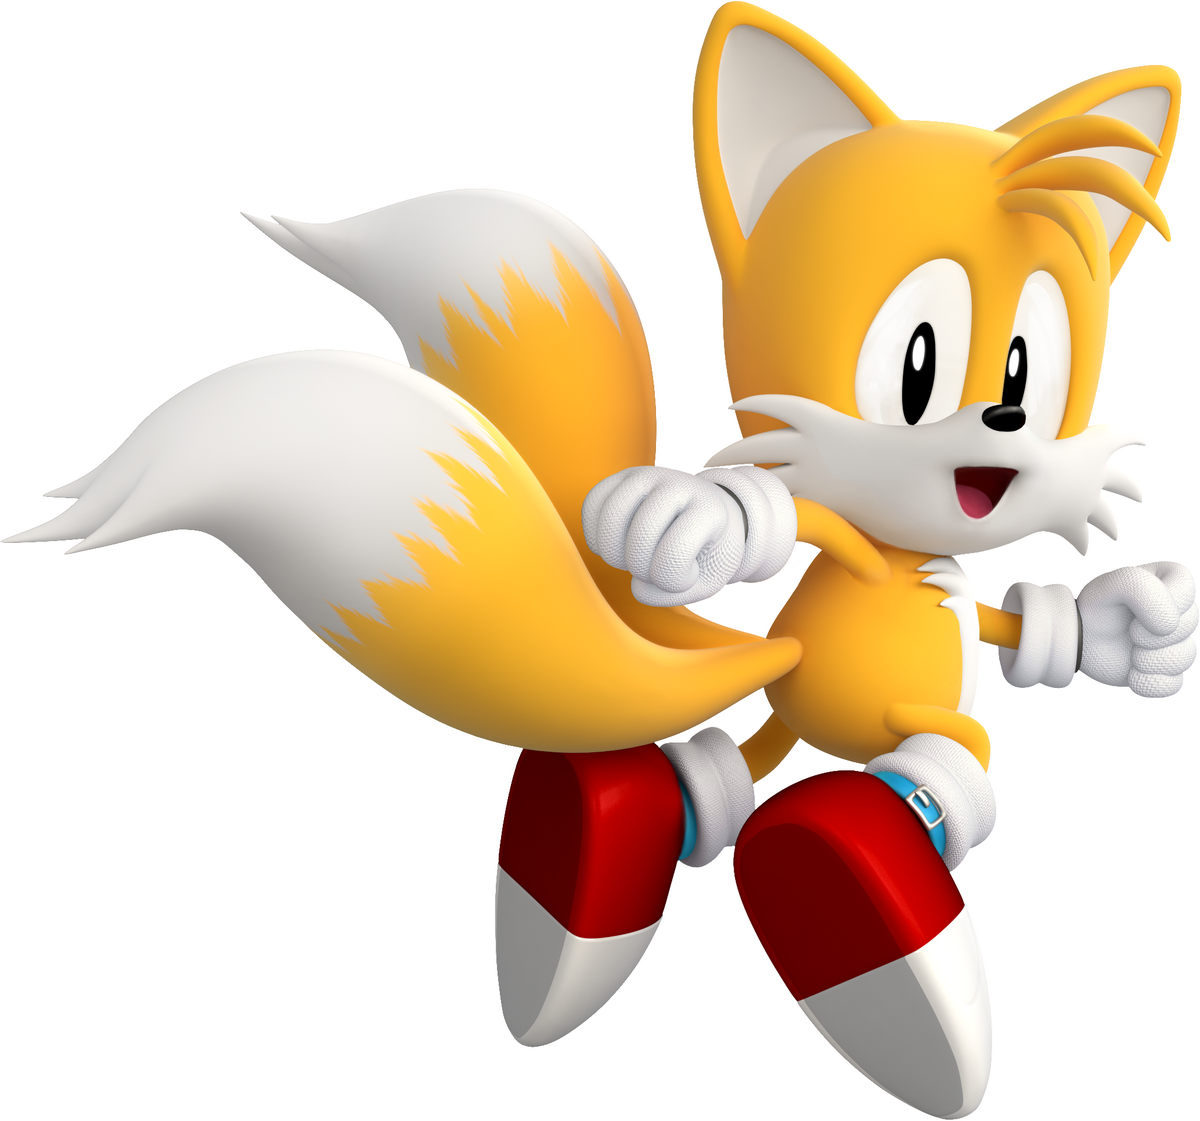 Tails (Sonic the Hedgehog) – Wikipédia, a enciclopédia livre